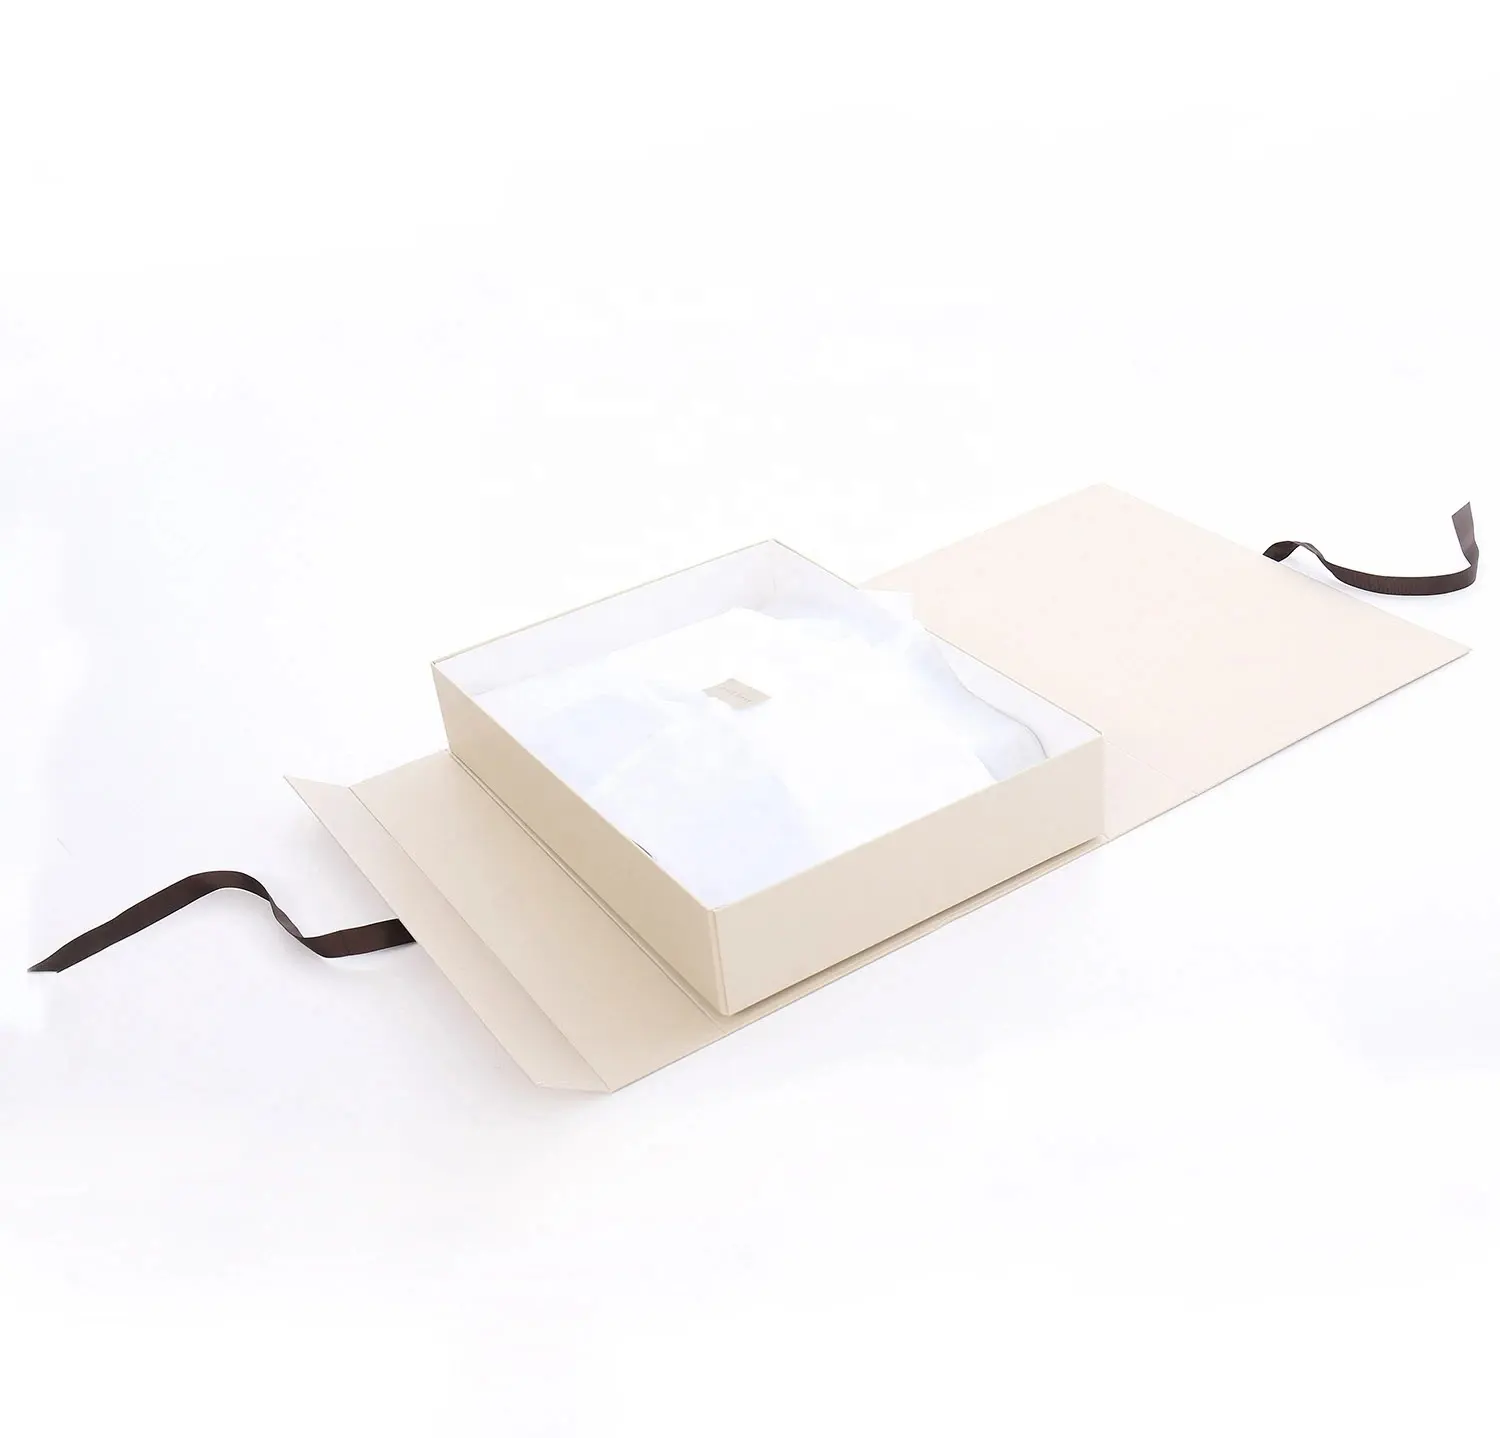 कस्टम चुंबकीय तह कागज उपहार बॉक्स अधोवस्त्र के लिए रिबन के साथ गत्ता तह कपड़े पैकेजिंग बक्से